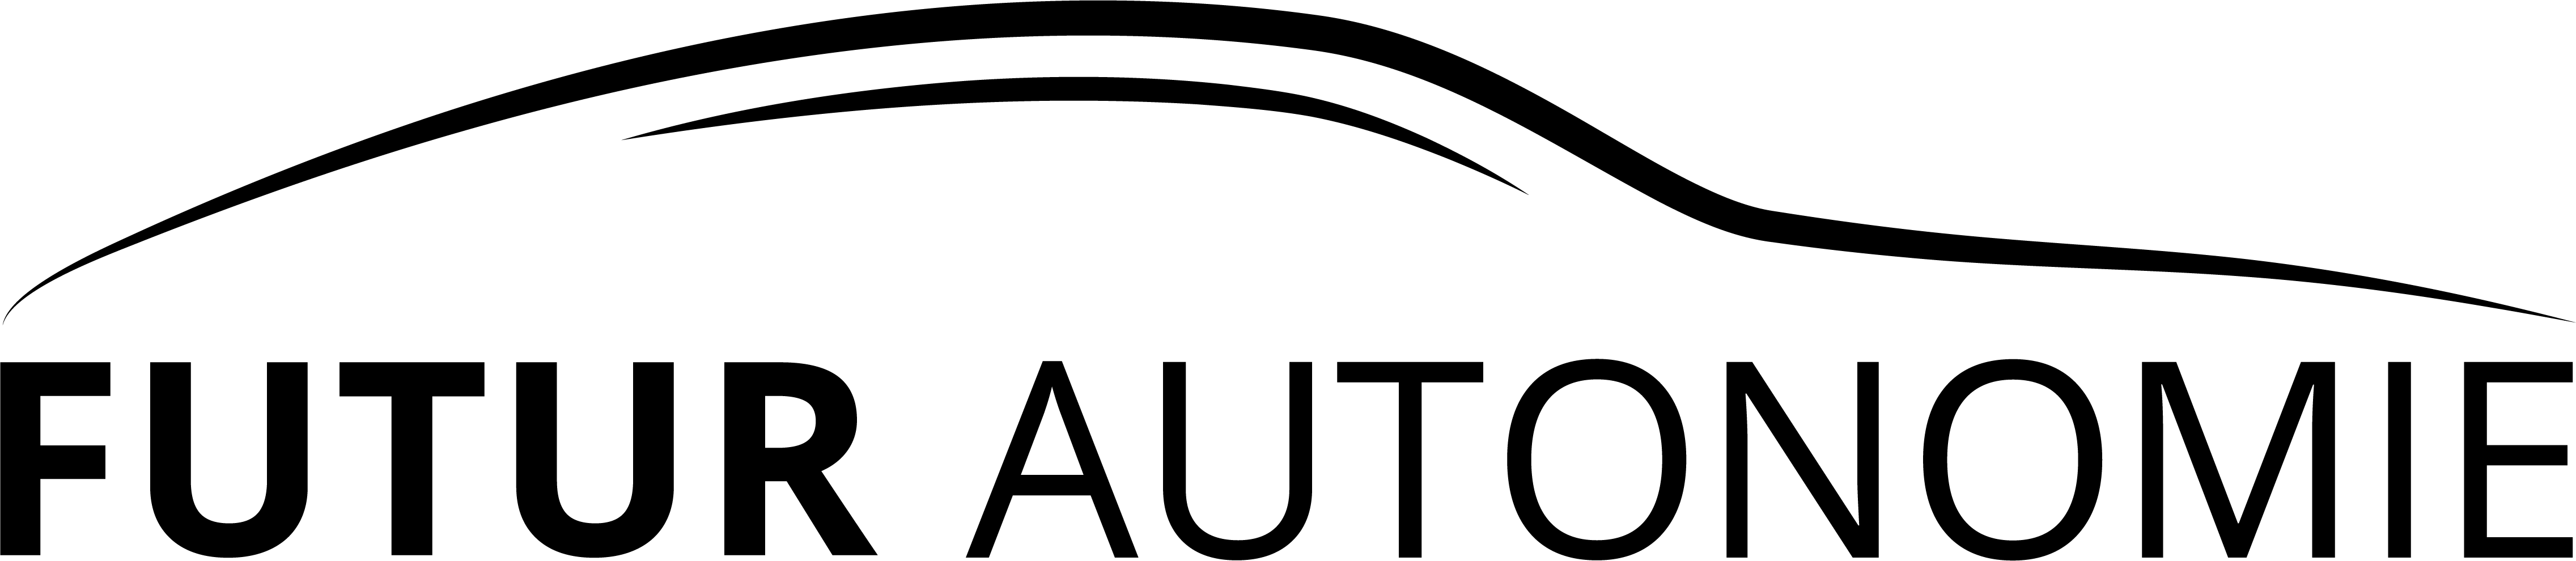 Logo-fautonomie-noir